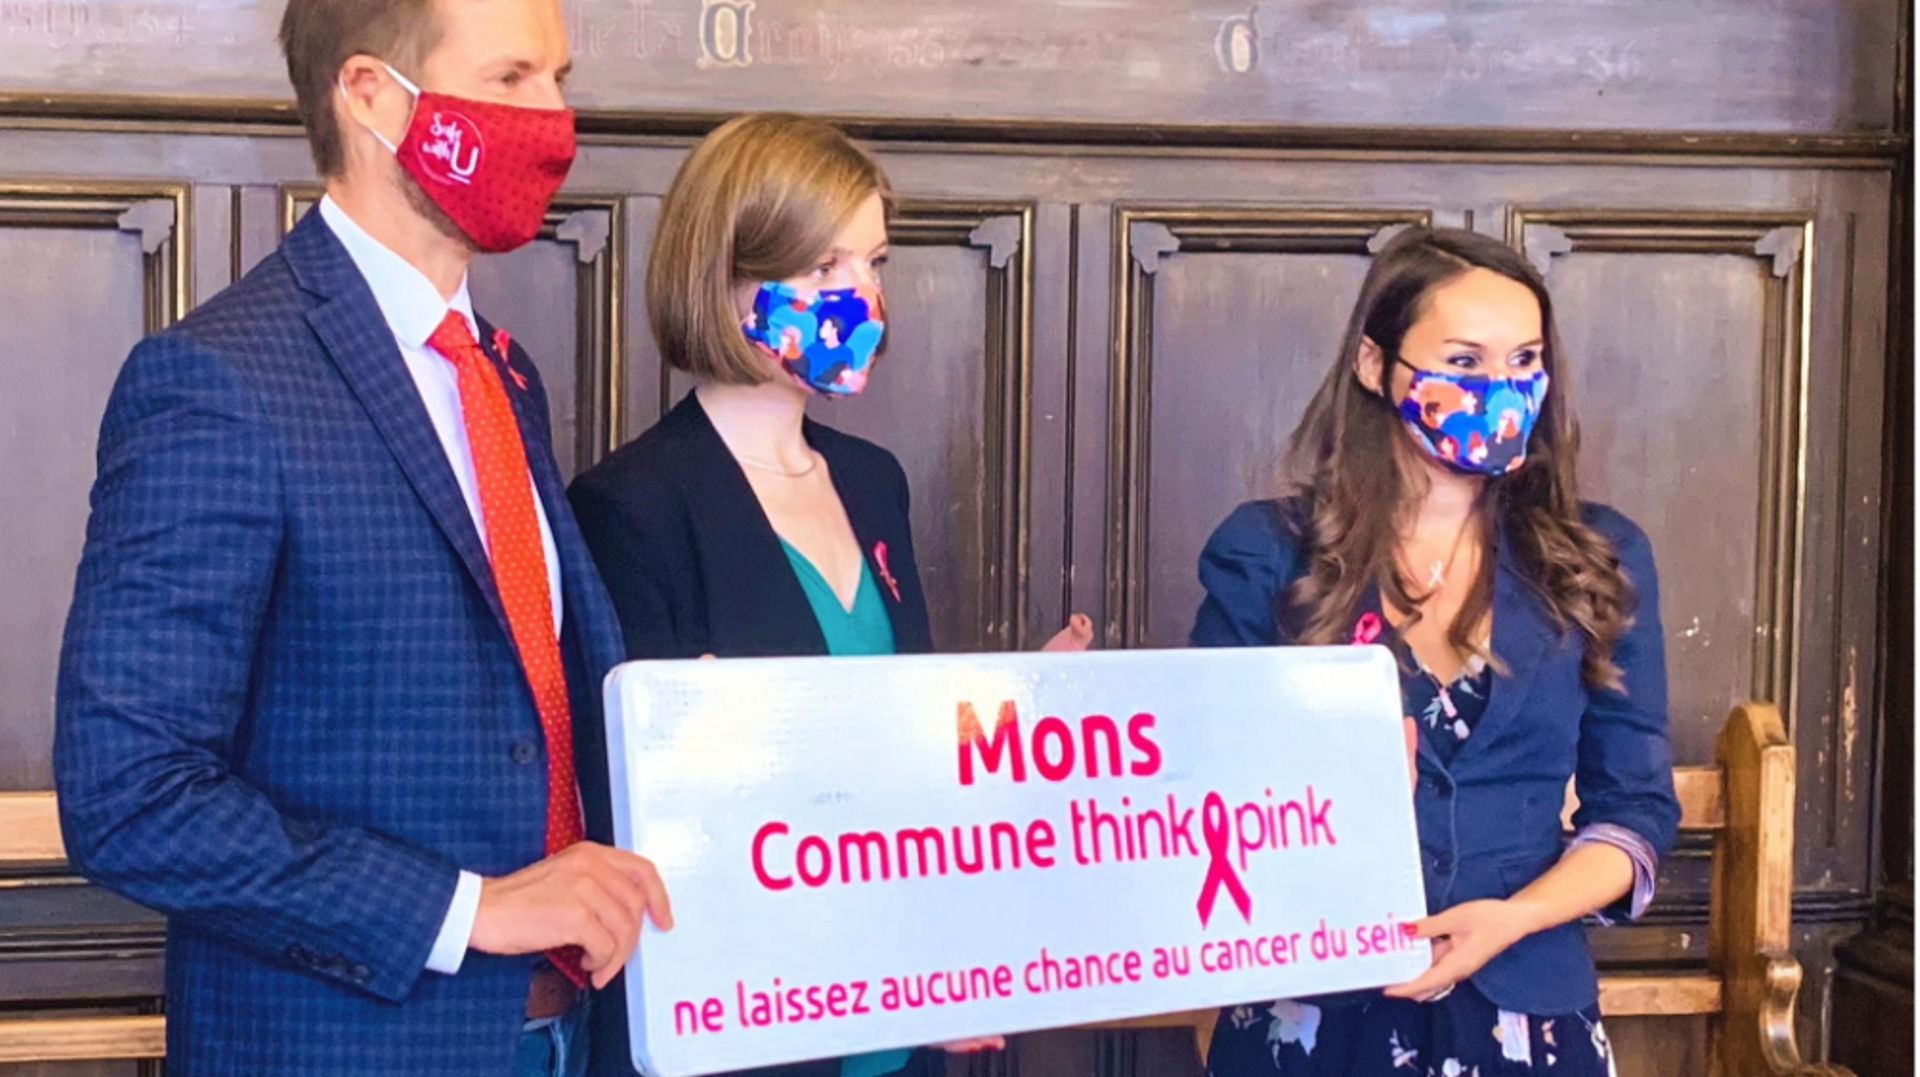 La ville de Mons officiellement labellisée Think Pink